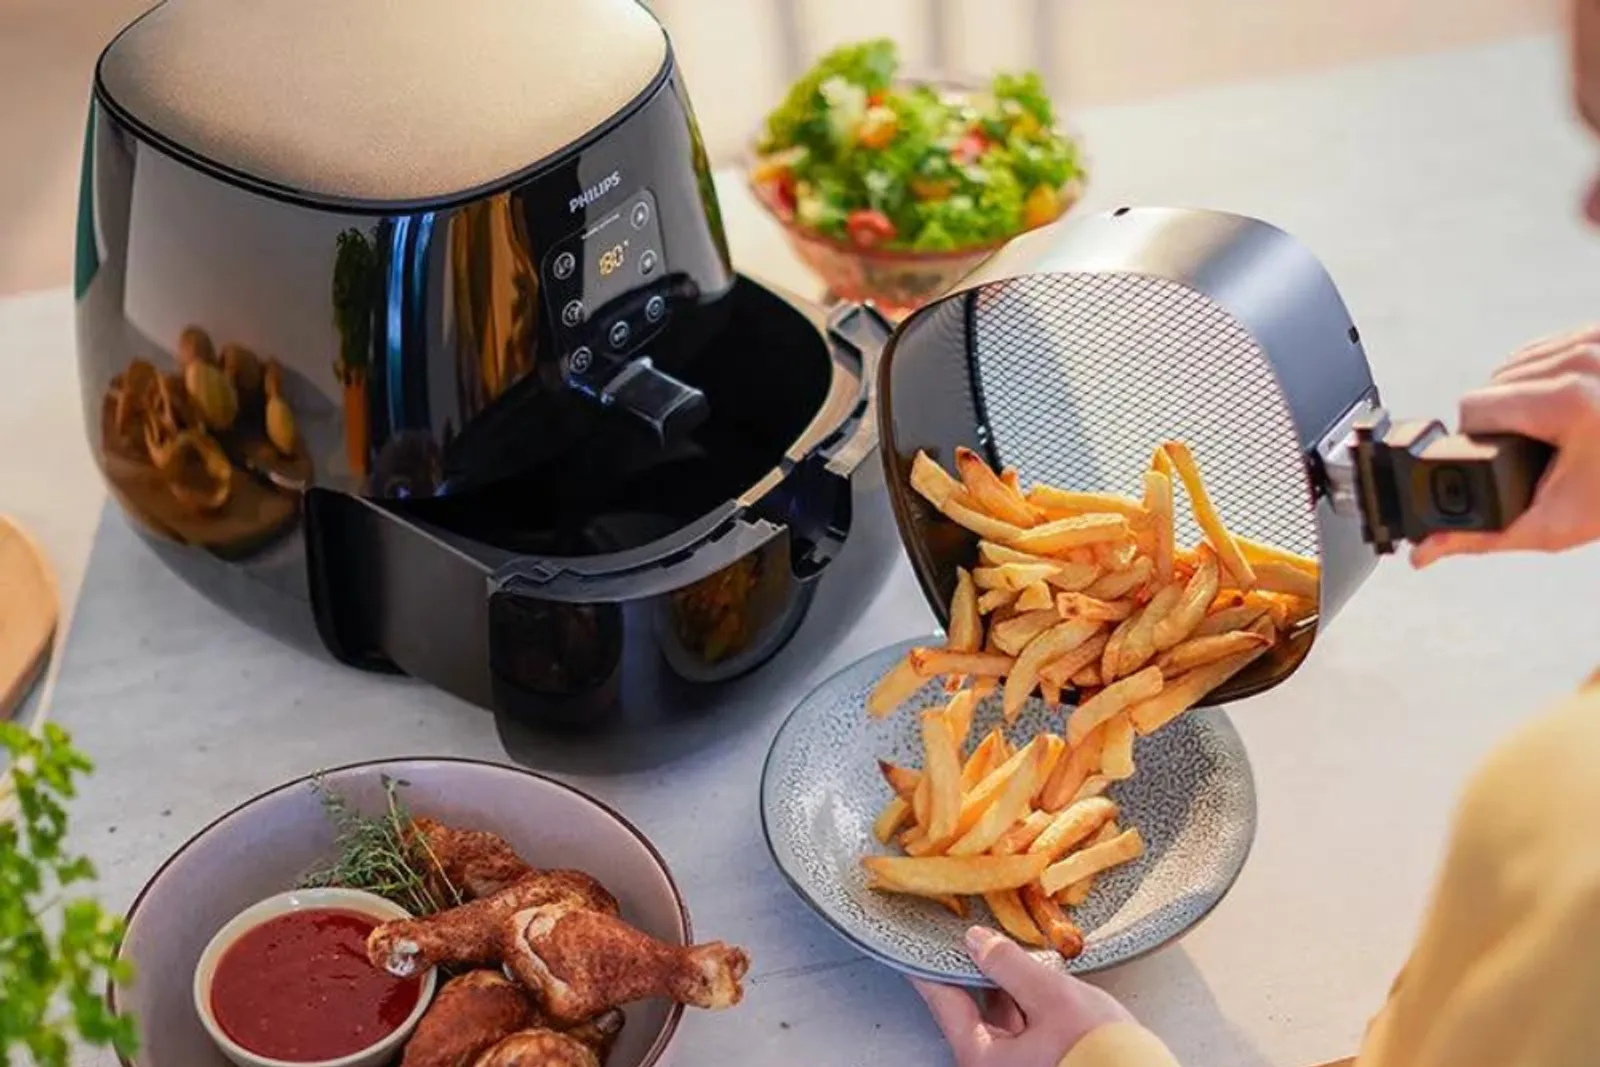 7 Makanan yang Nggak Boleh Dimasak Menggunakan Air Fryer, Hati-Hati!